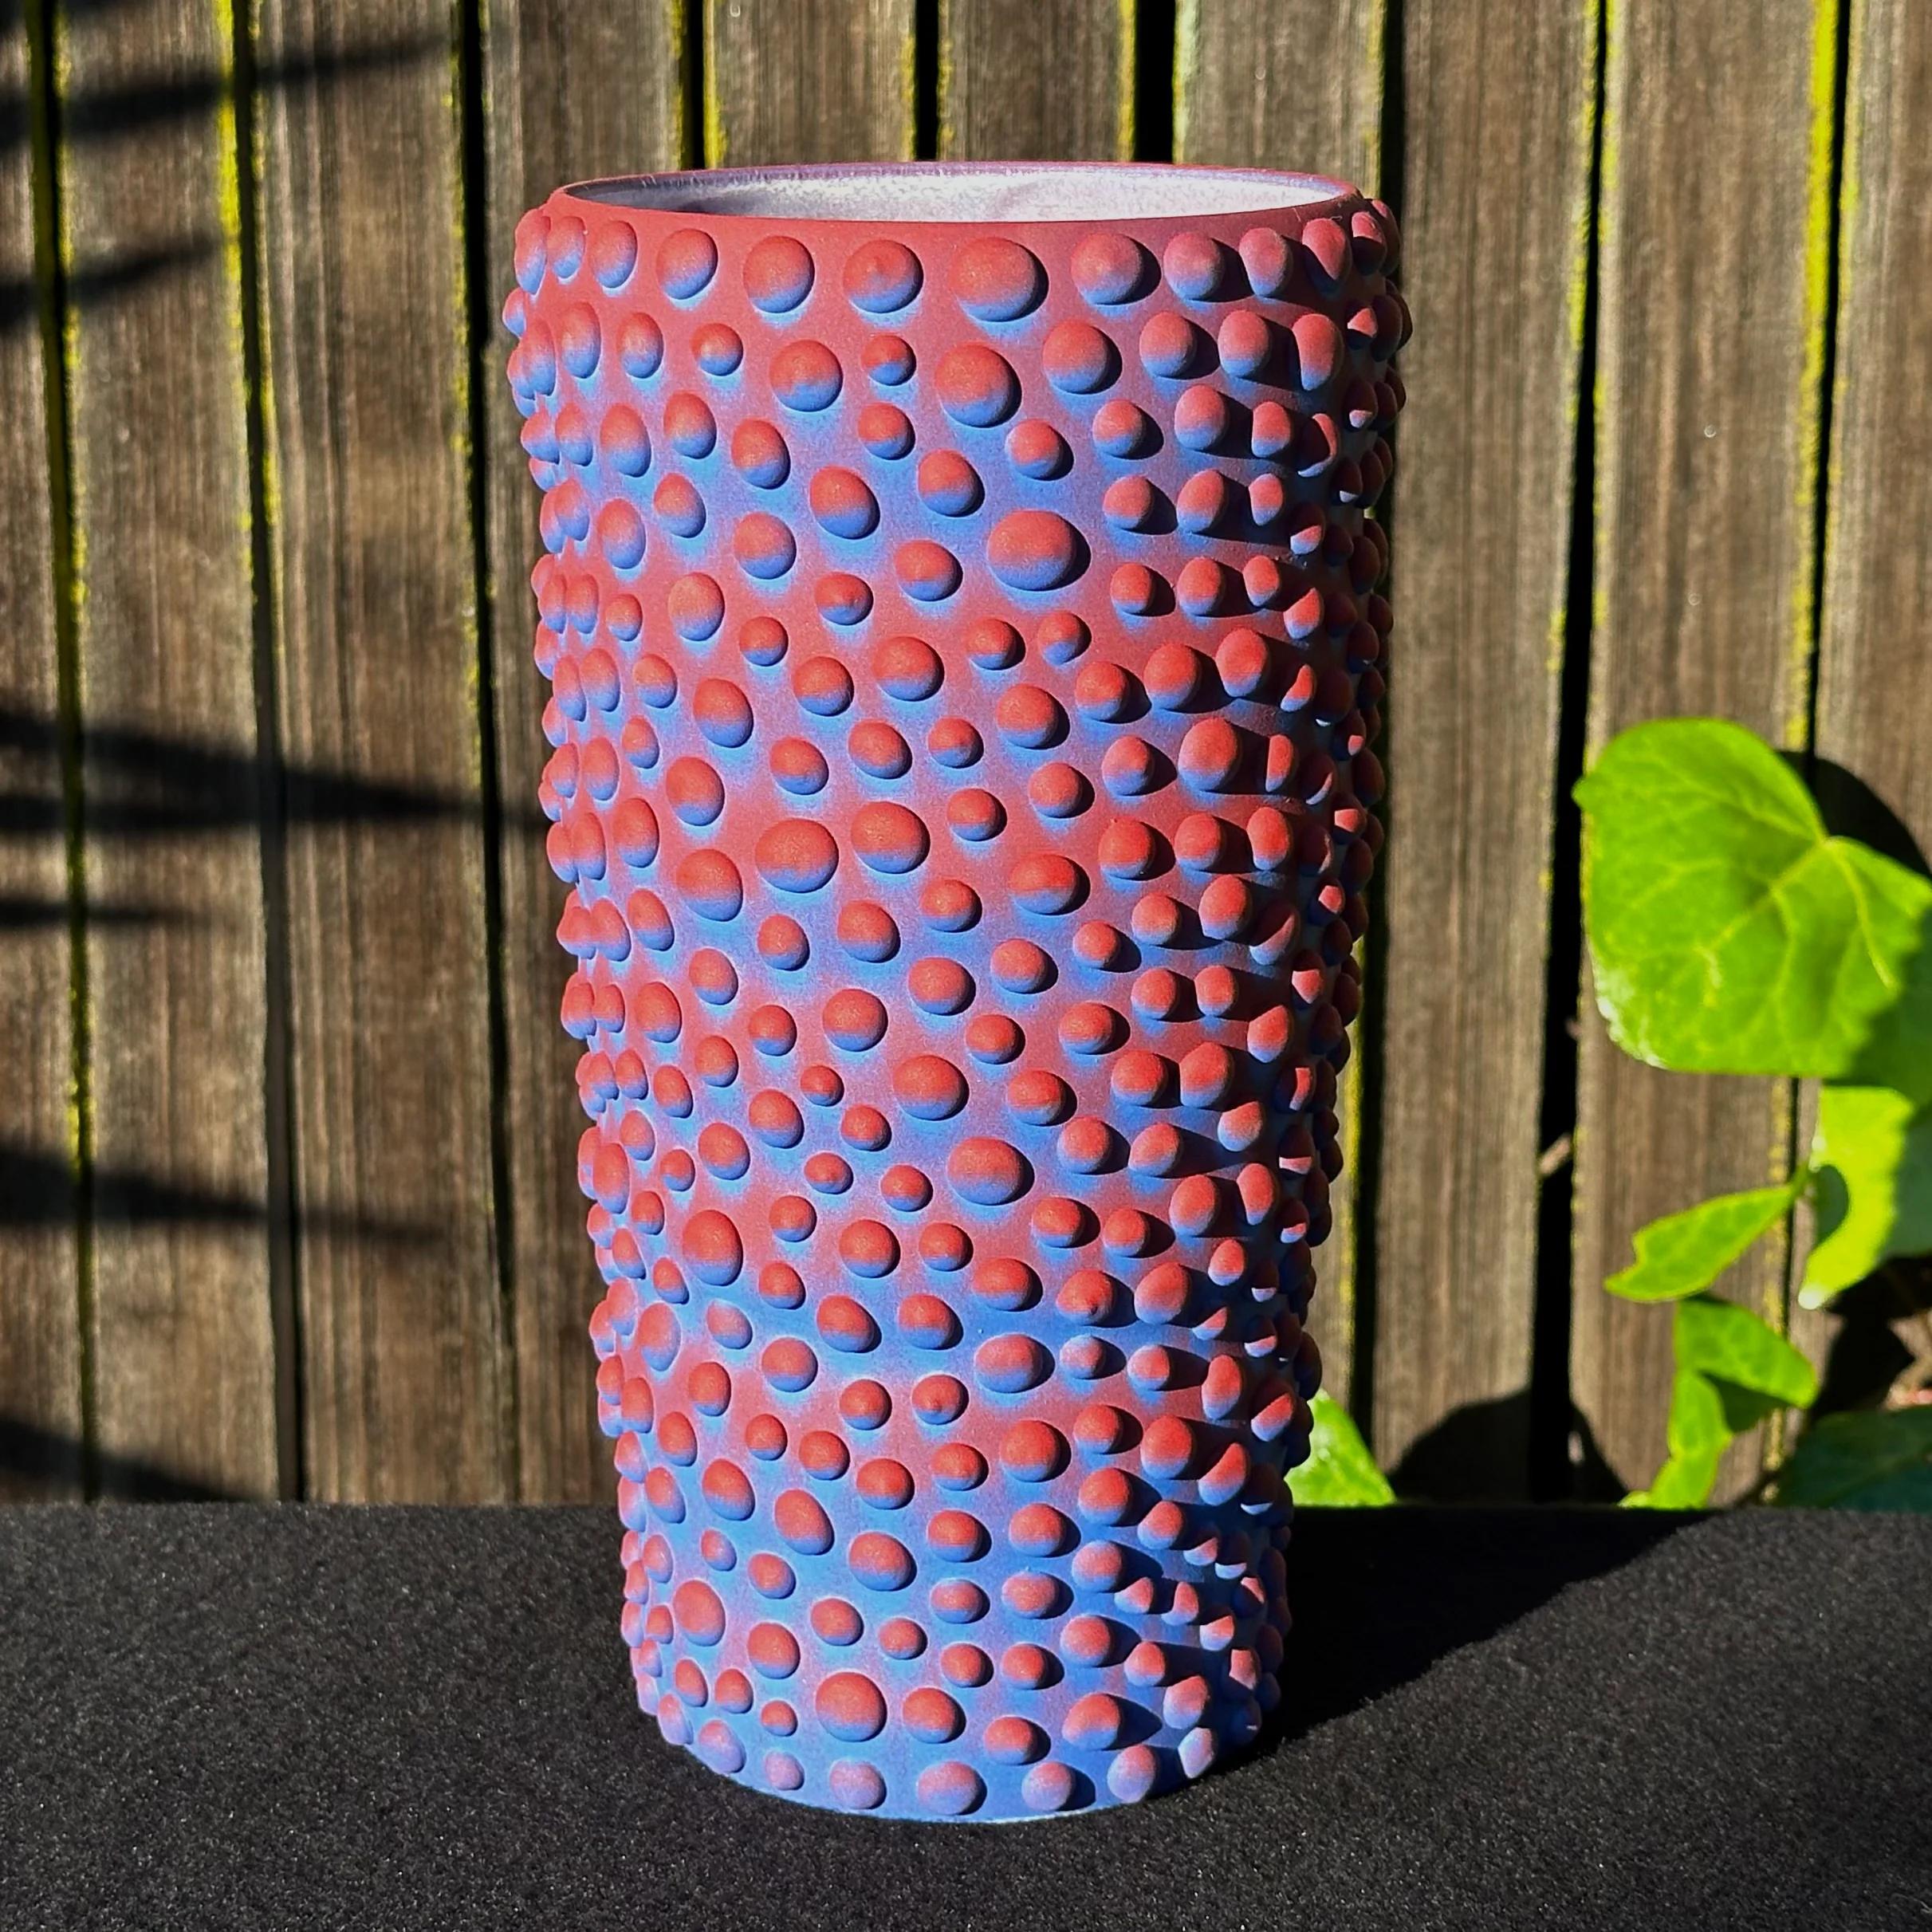 Diese vom Künstler Justin Kiene aus Oakland entworfenen und hergestellten organischen Pflanzgefäße und Vasen sind von den Formen der natürlichen und mikroskopischen Welt inspiriert.

Jedes Stück wird von Hand gedreht und glasiert, was es in Ton,